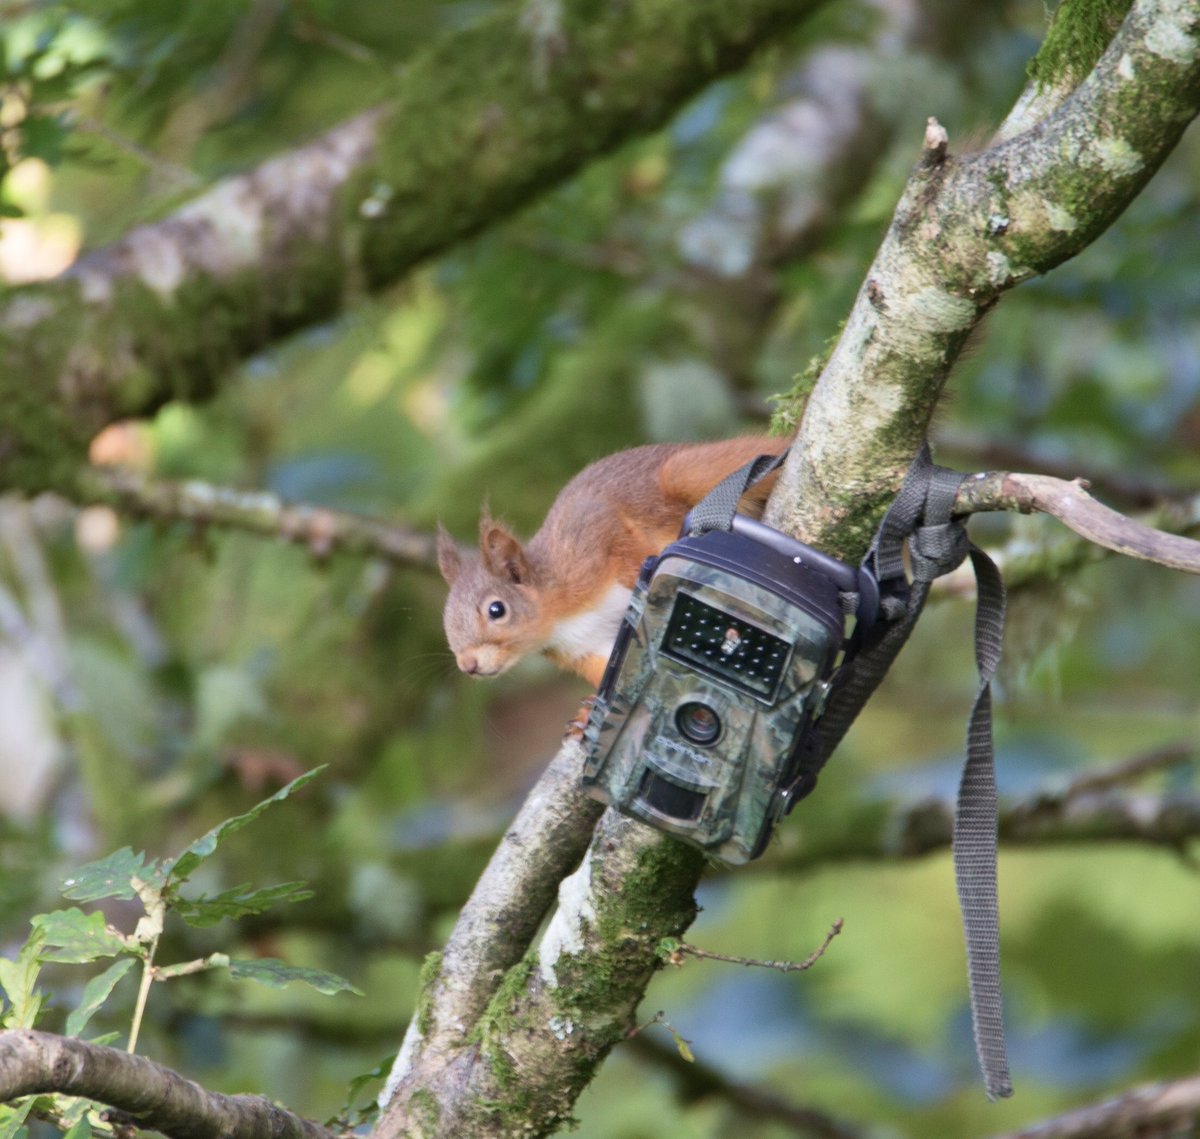 Red Squirrel 🐿 Caught on camera #argyll #redsquirrel #wildlifephotography #rewilding #wildlifecamera #nature